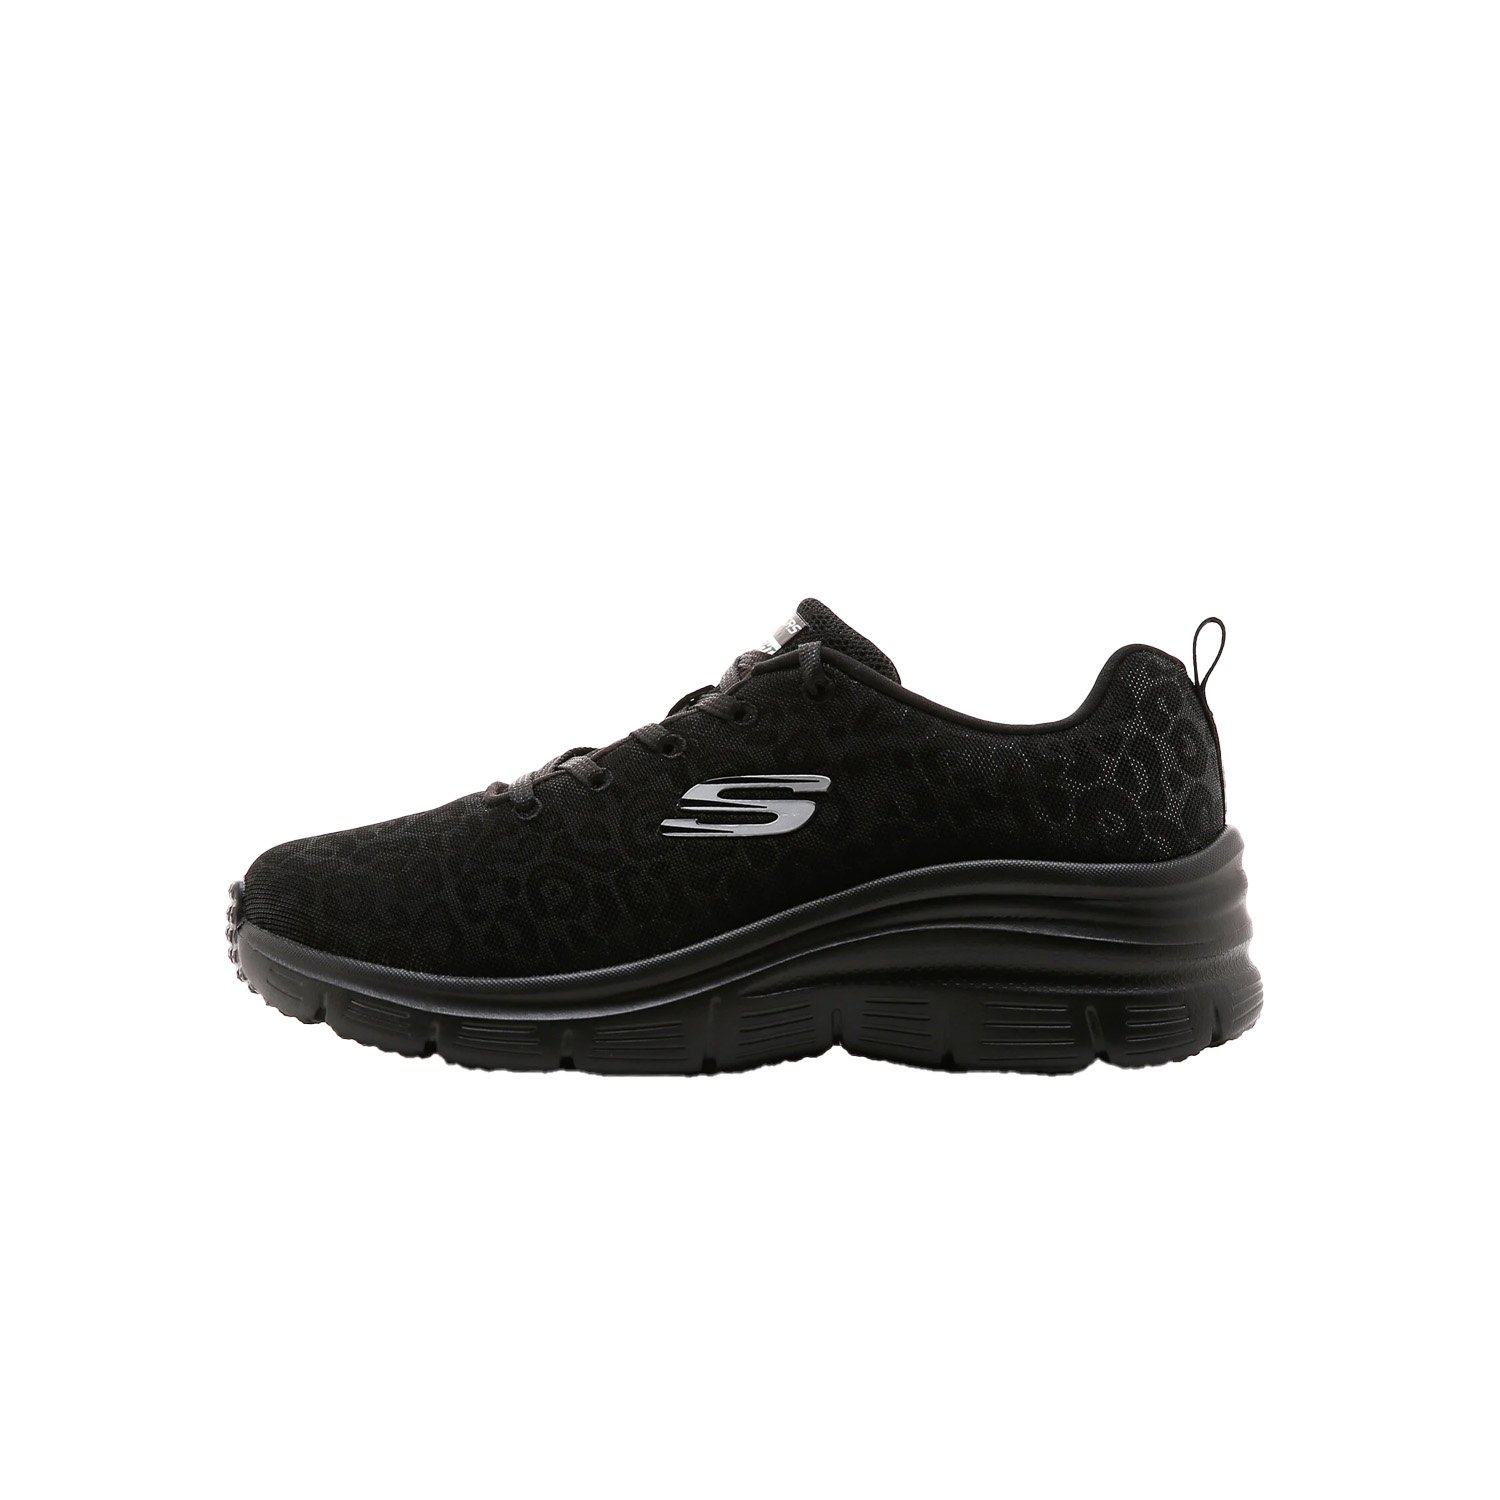 Skechers Fashion Fit Kadın Ayakkabısı - Siyah - 1